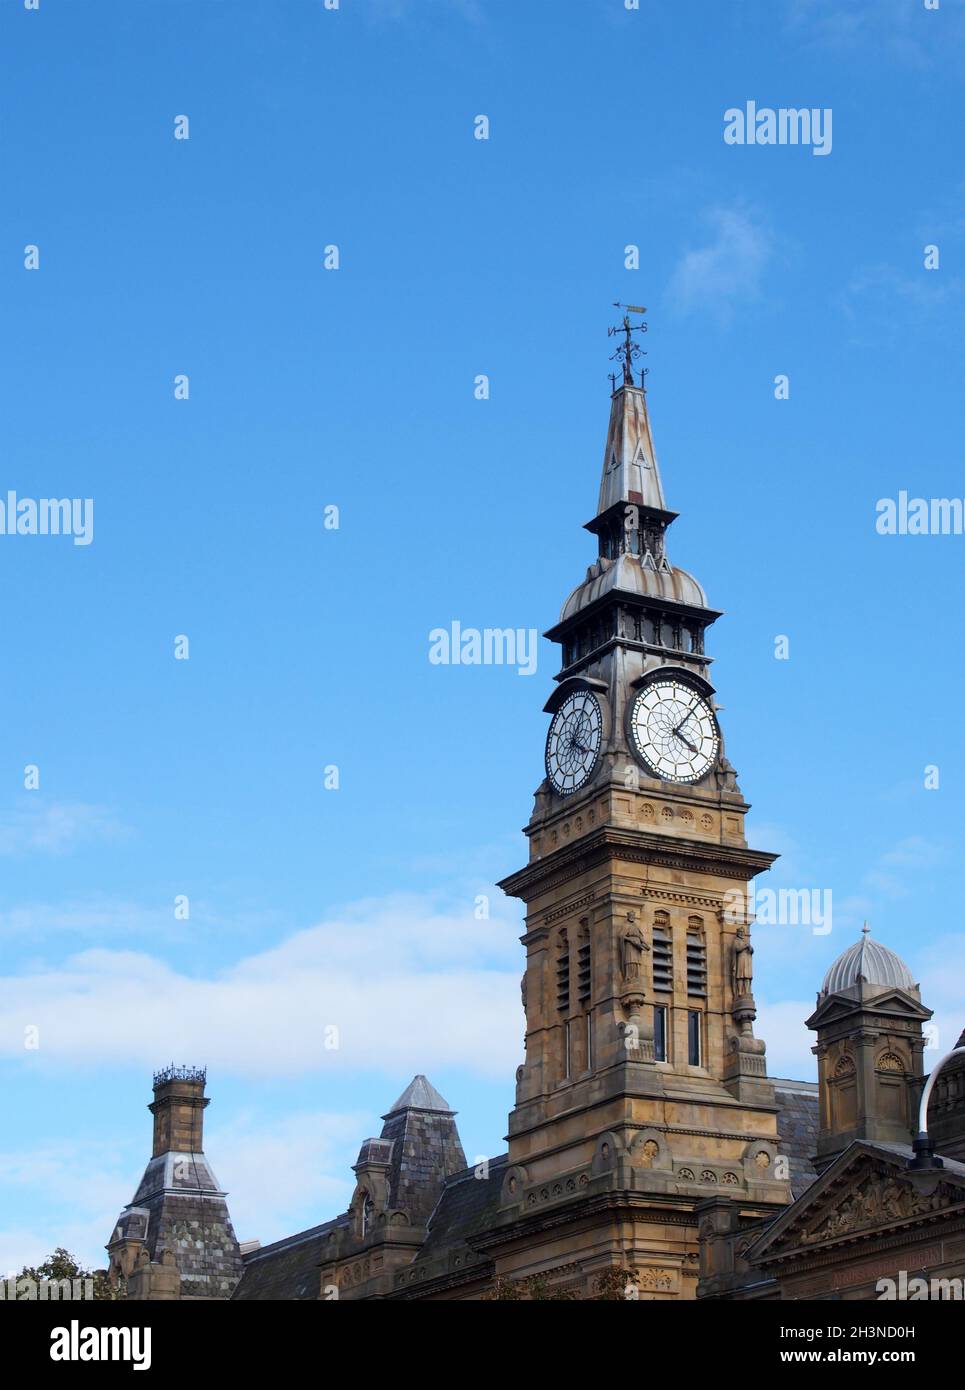 La tour de l'horloge du bâtiment historique victorien atkinson à southport merseyside, dans un ciel bleu d'été Banque D'Images